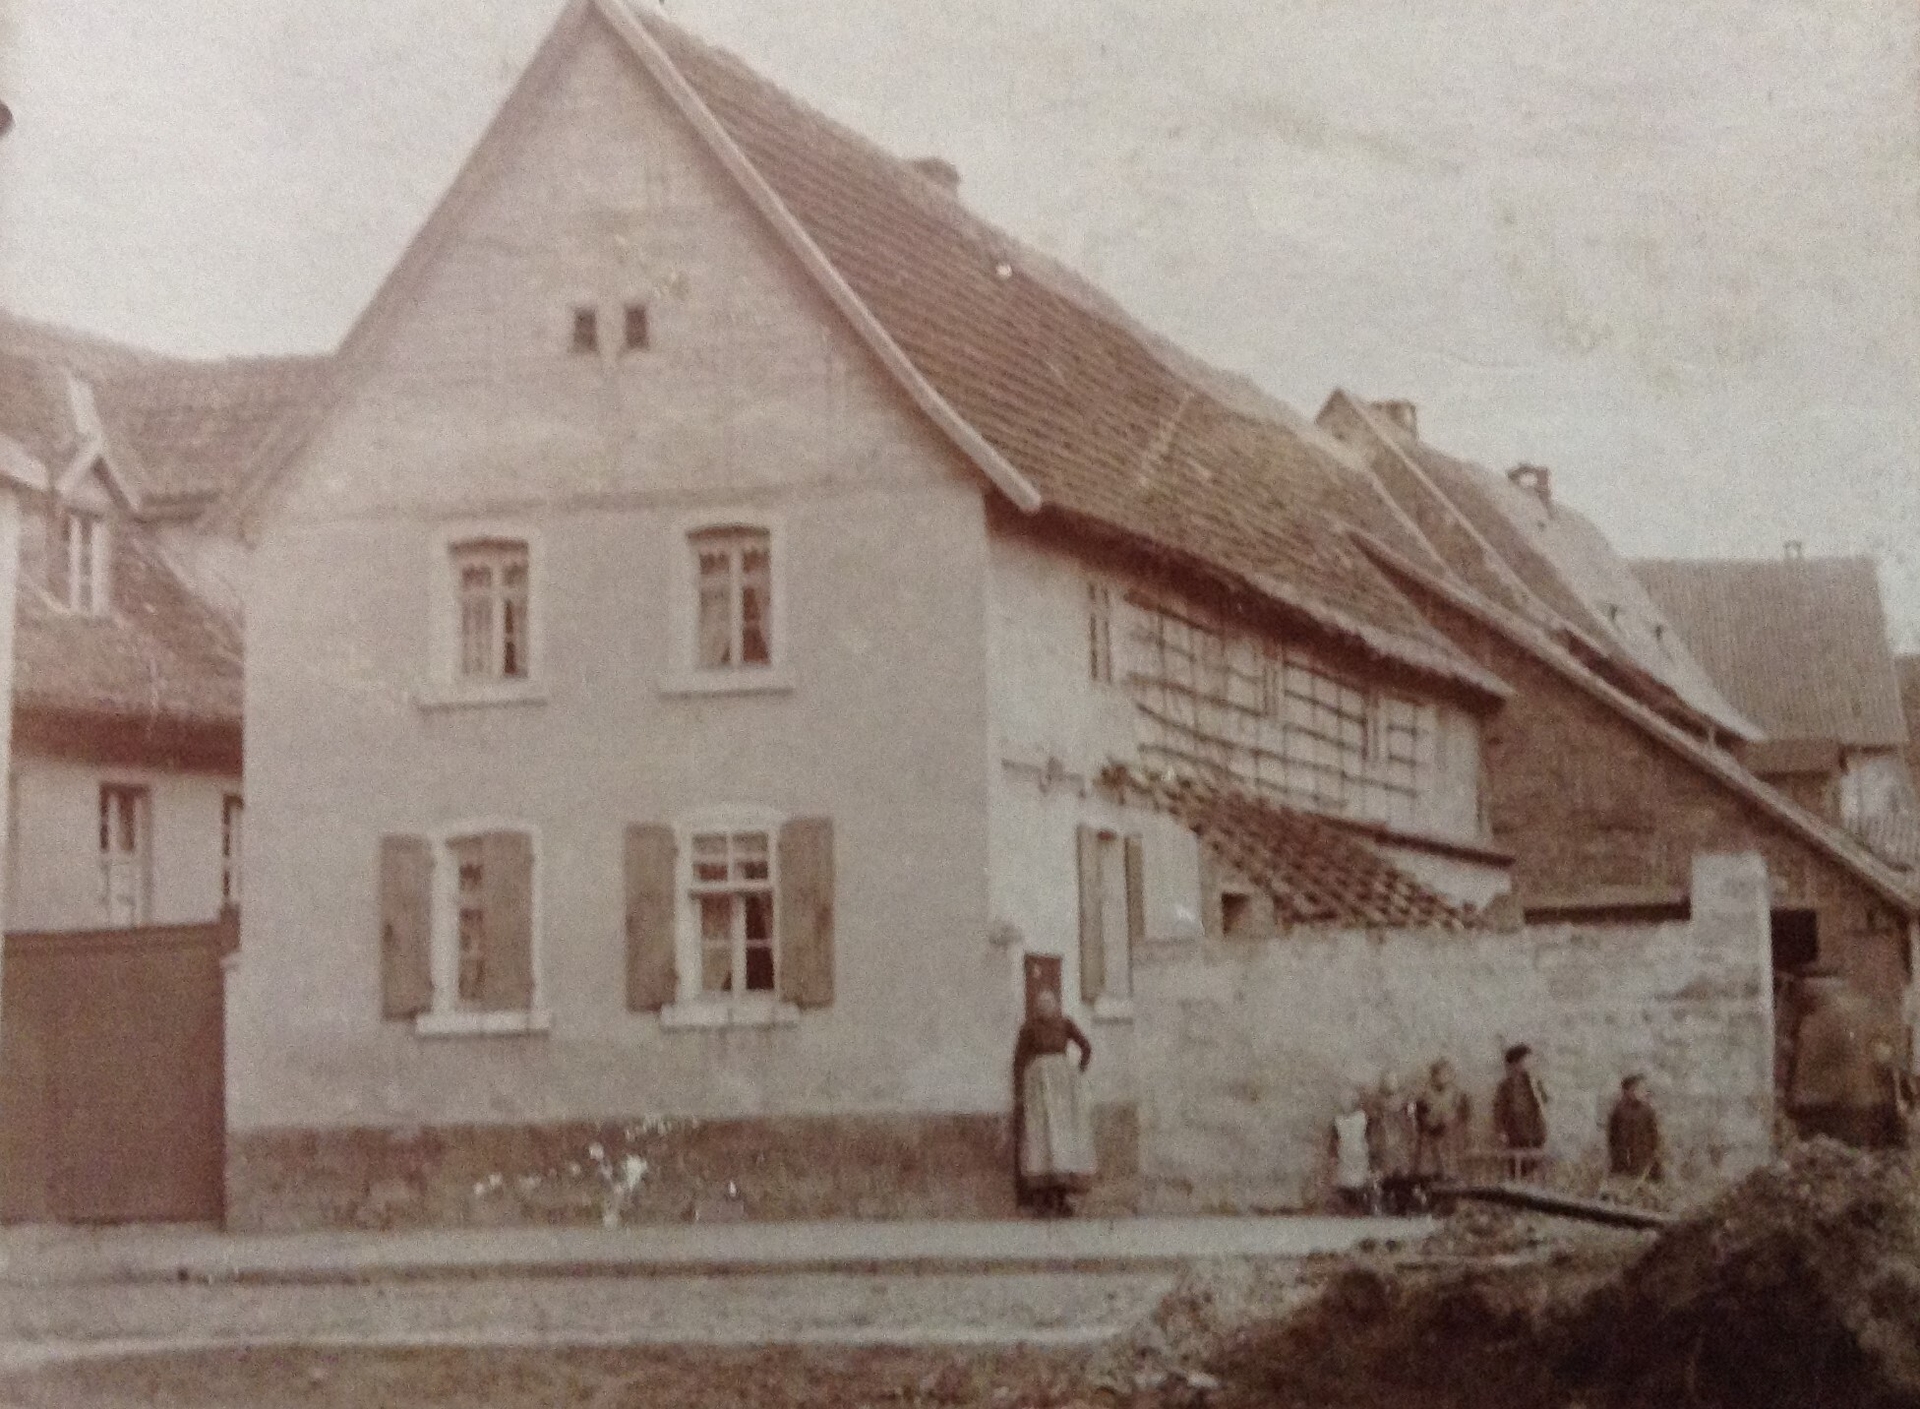 Bild: 1900 (jedenfalls vor 1906) Bäckerei Wienrich, Rathausstraße 17 (damals vielleicht Poststraße)